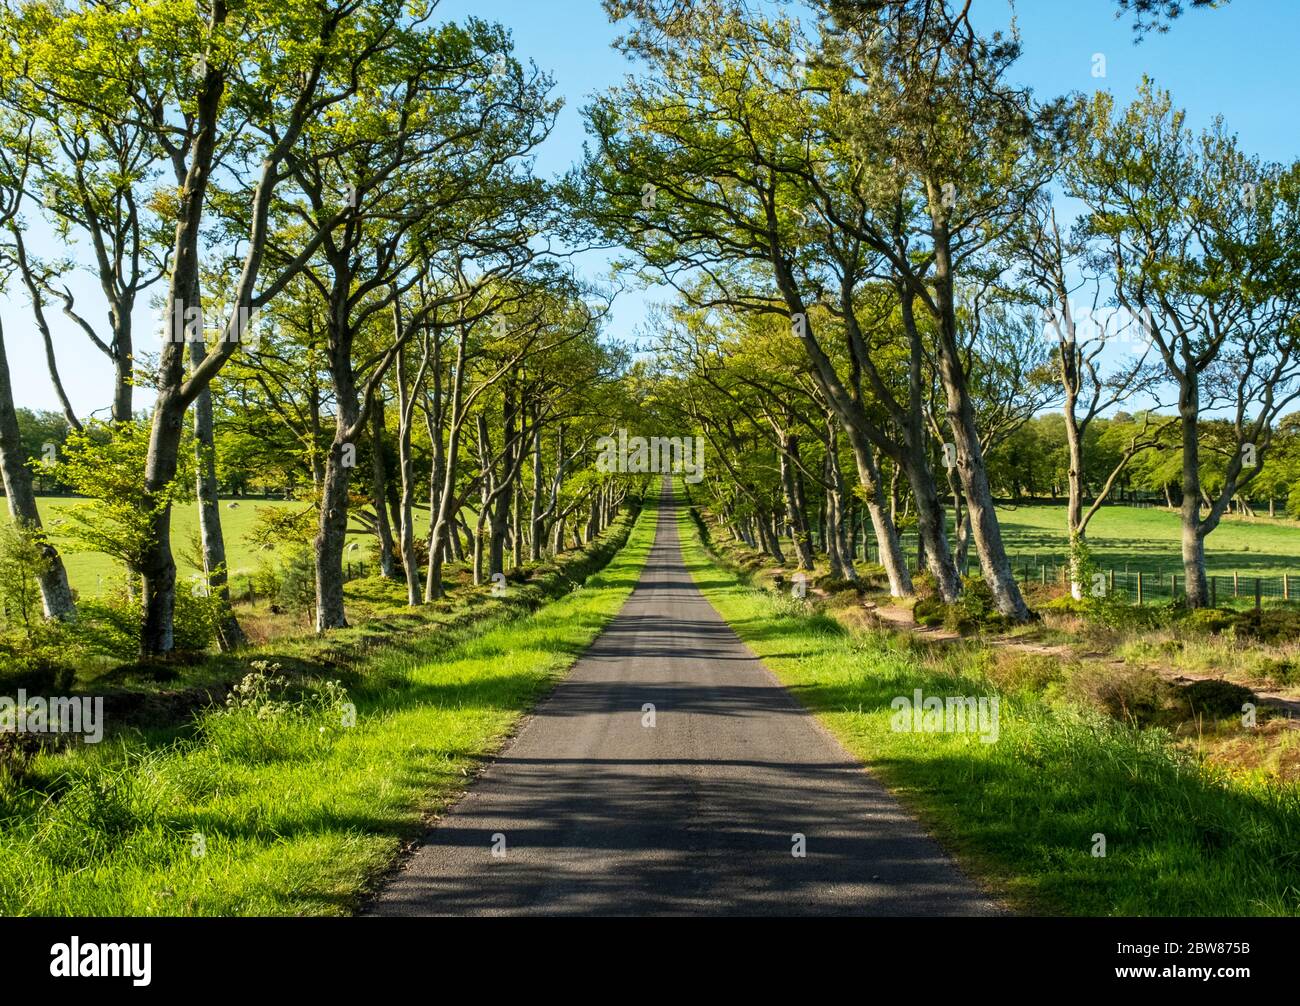 Die baumgesäumte Allee, die als Zufahrtsstraße zum Pentland Hills Regional Park in der Nähe von Balerno, Midlothian, Schottland, fungiert. Stockfoto